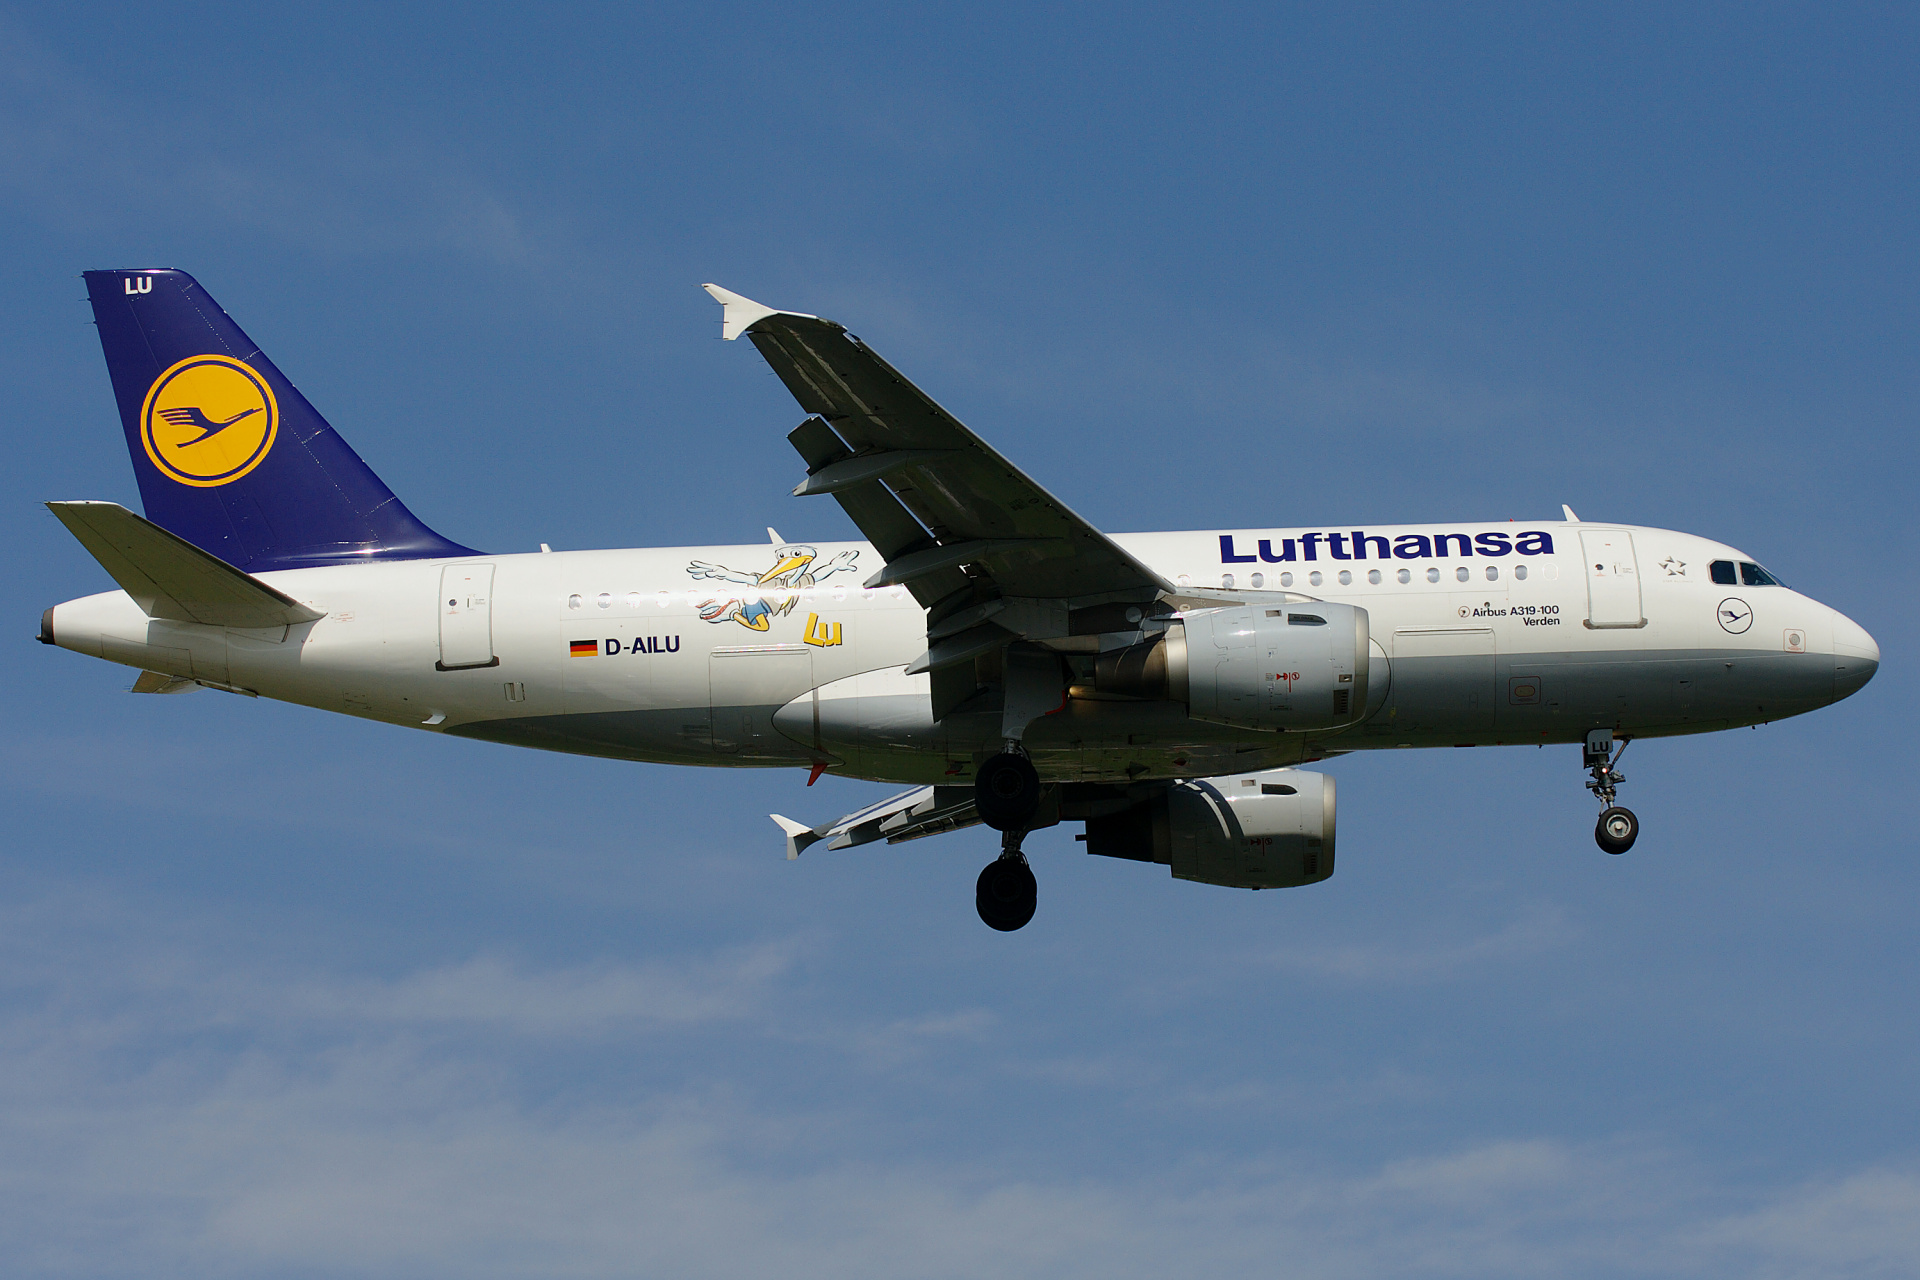 D-AILU (Lu livery) (Aircraft » EPWA Spotting » Airbus A319-100 » Lufthansa)